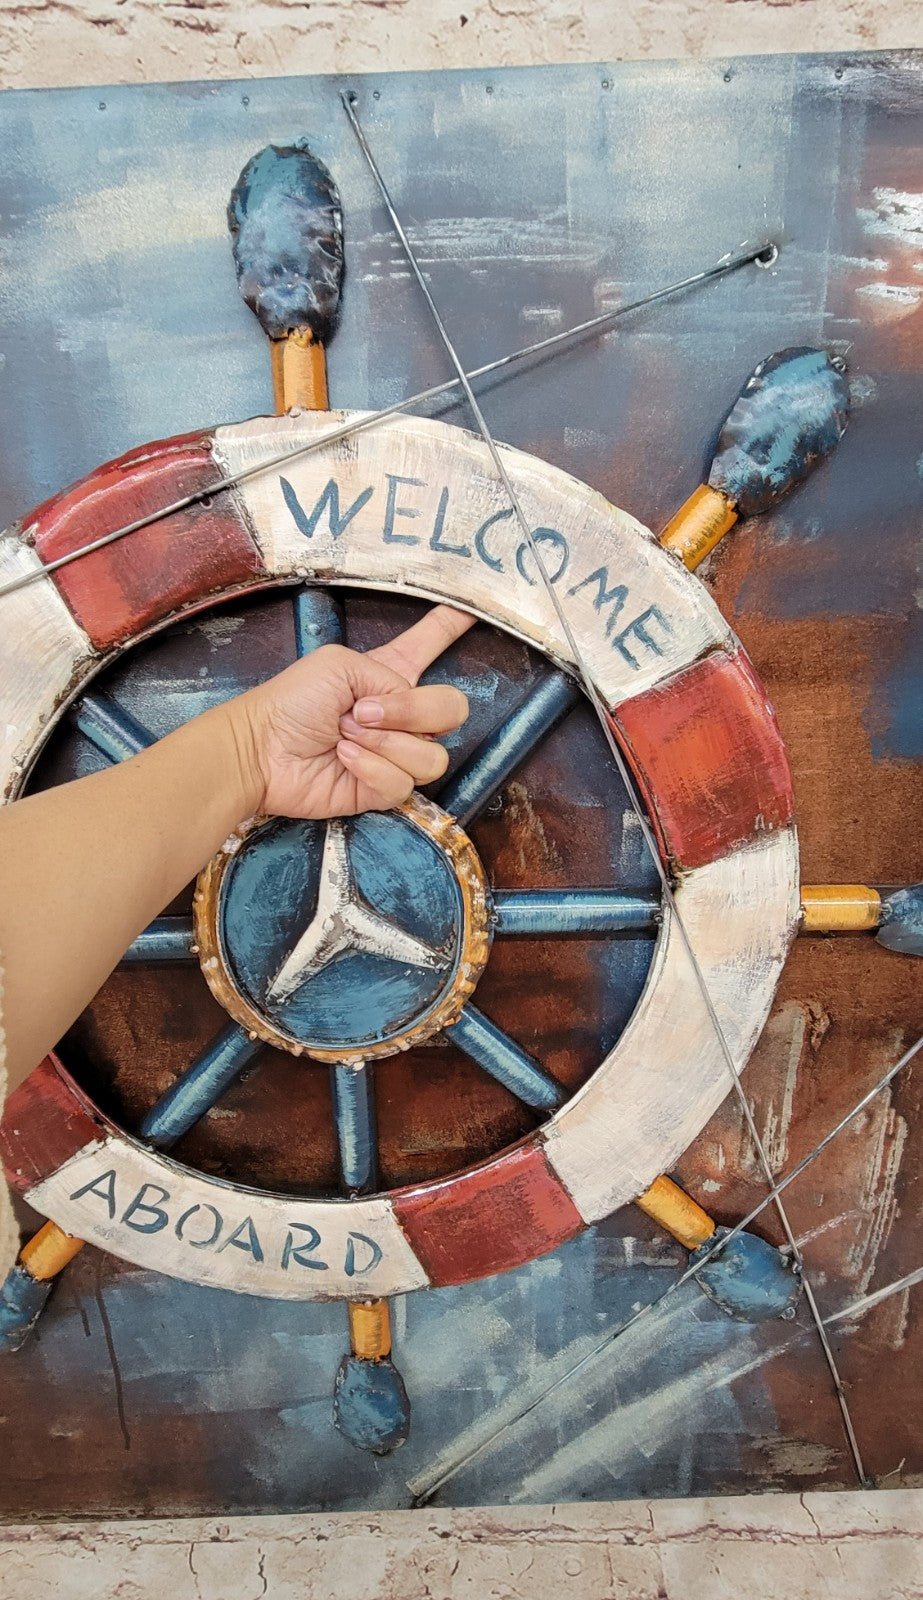  DiaLFa Coastal Canvas Wall Art Retro Boat Anchor